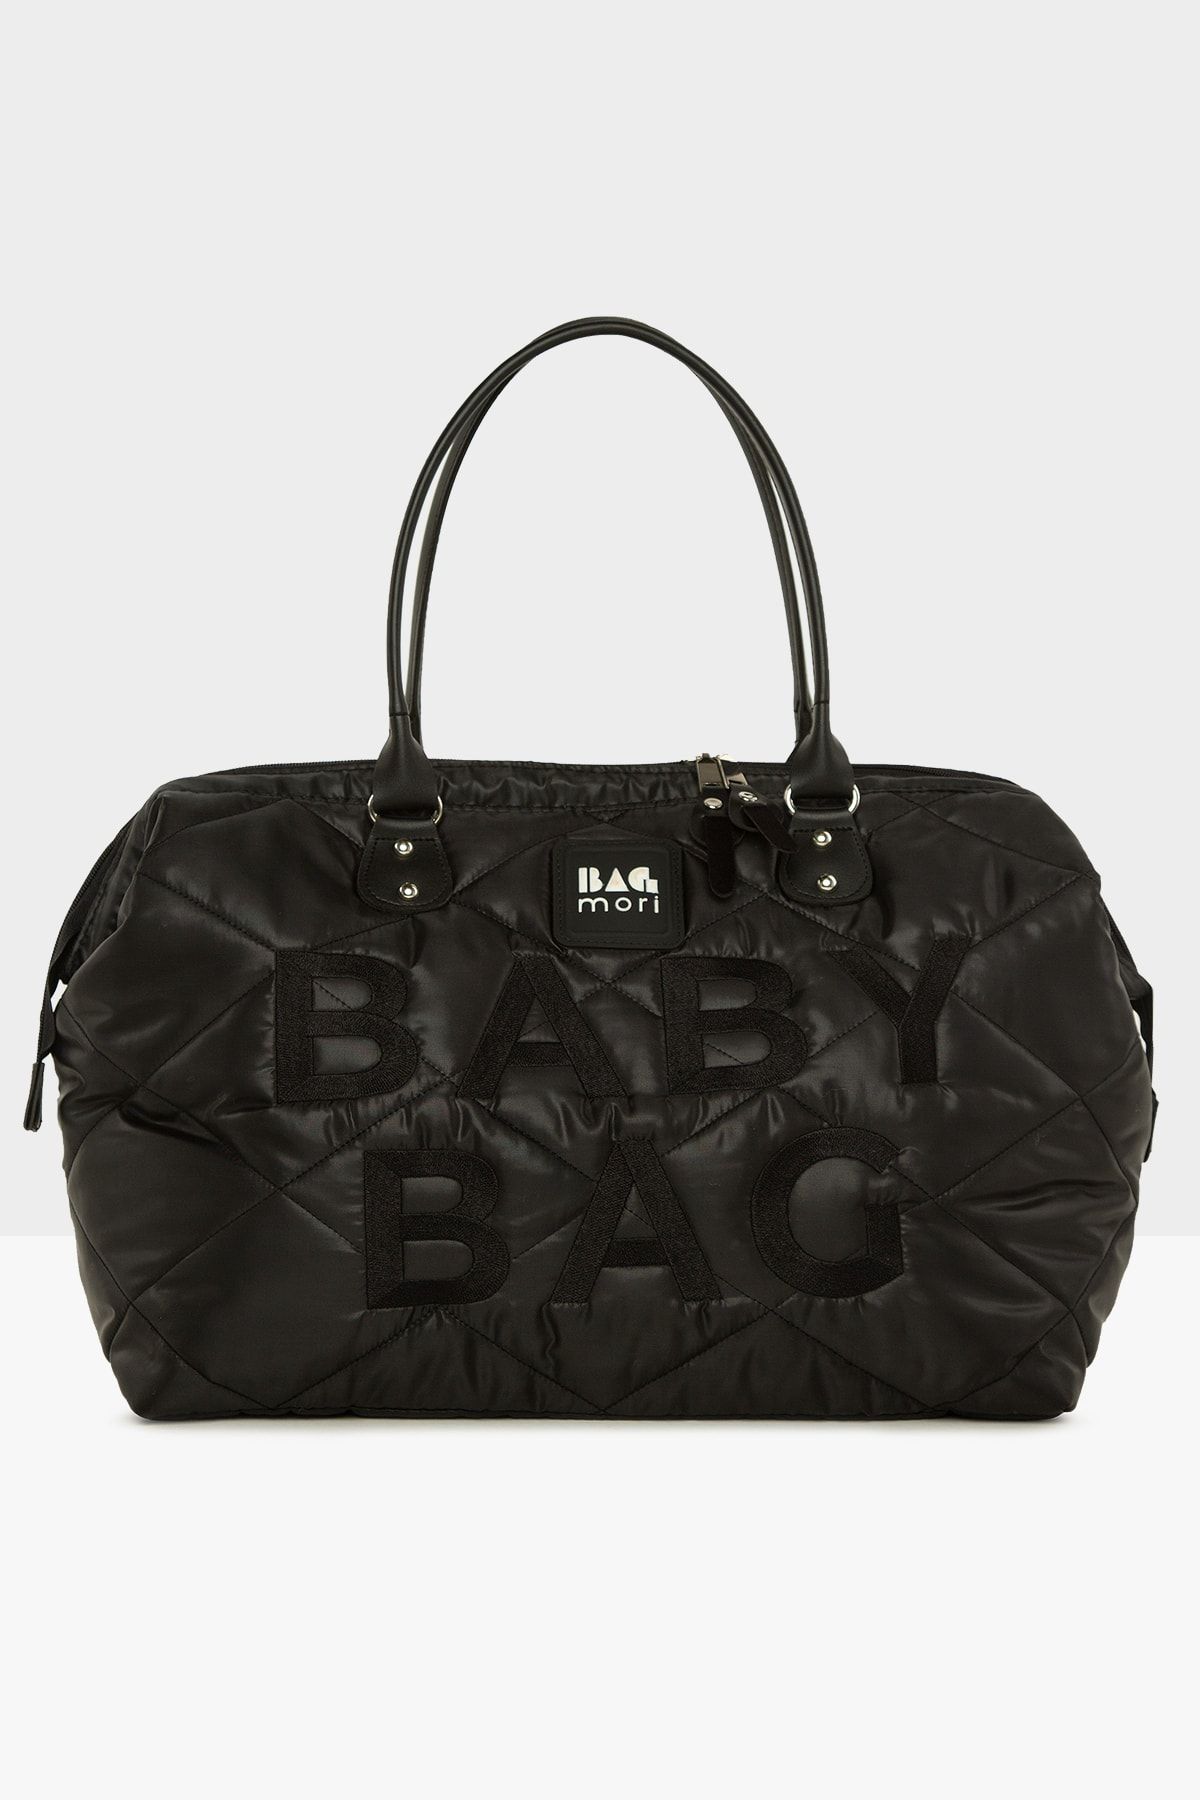 Bagmori Siyah Baby Bag Nakışlı Puf Şişme Anne Bebek Bakım Çanta M000006904